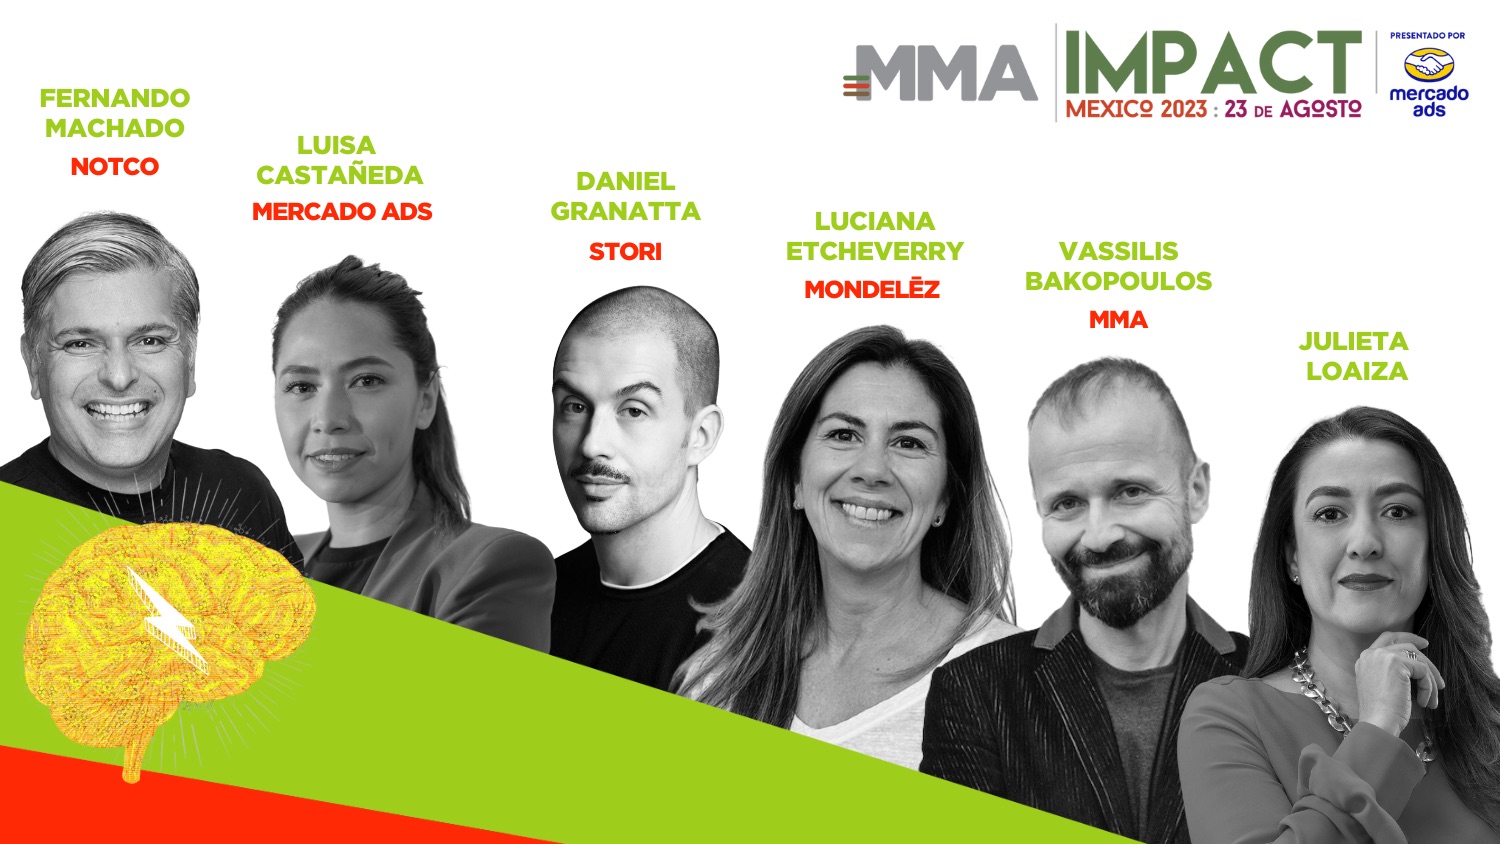 En agosto, MMA Impact México 2023 celebrará el impacto positivo de la innovación empresarial